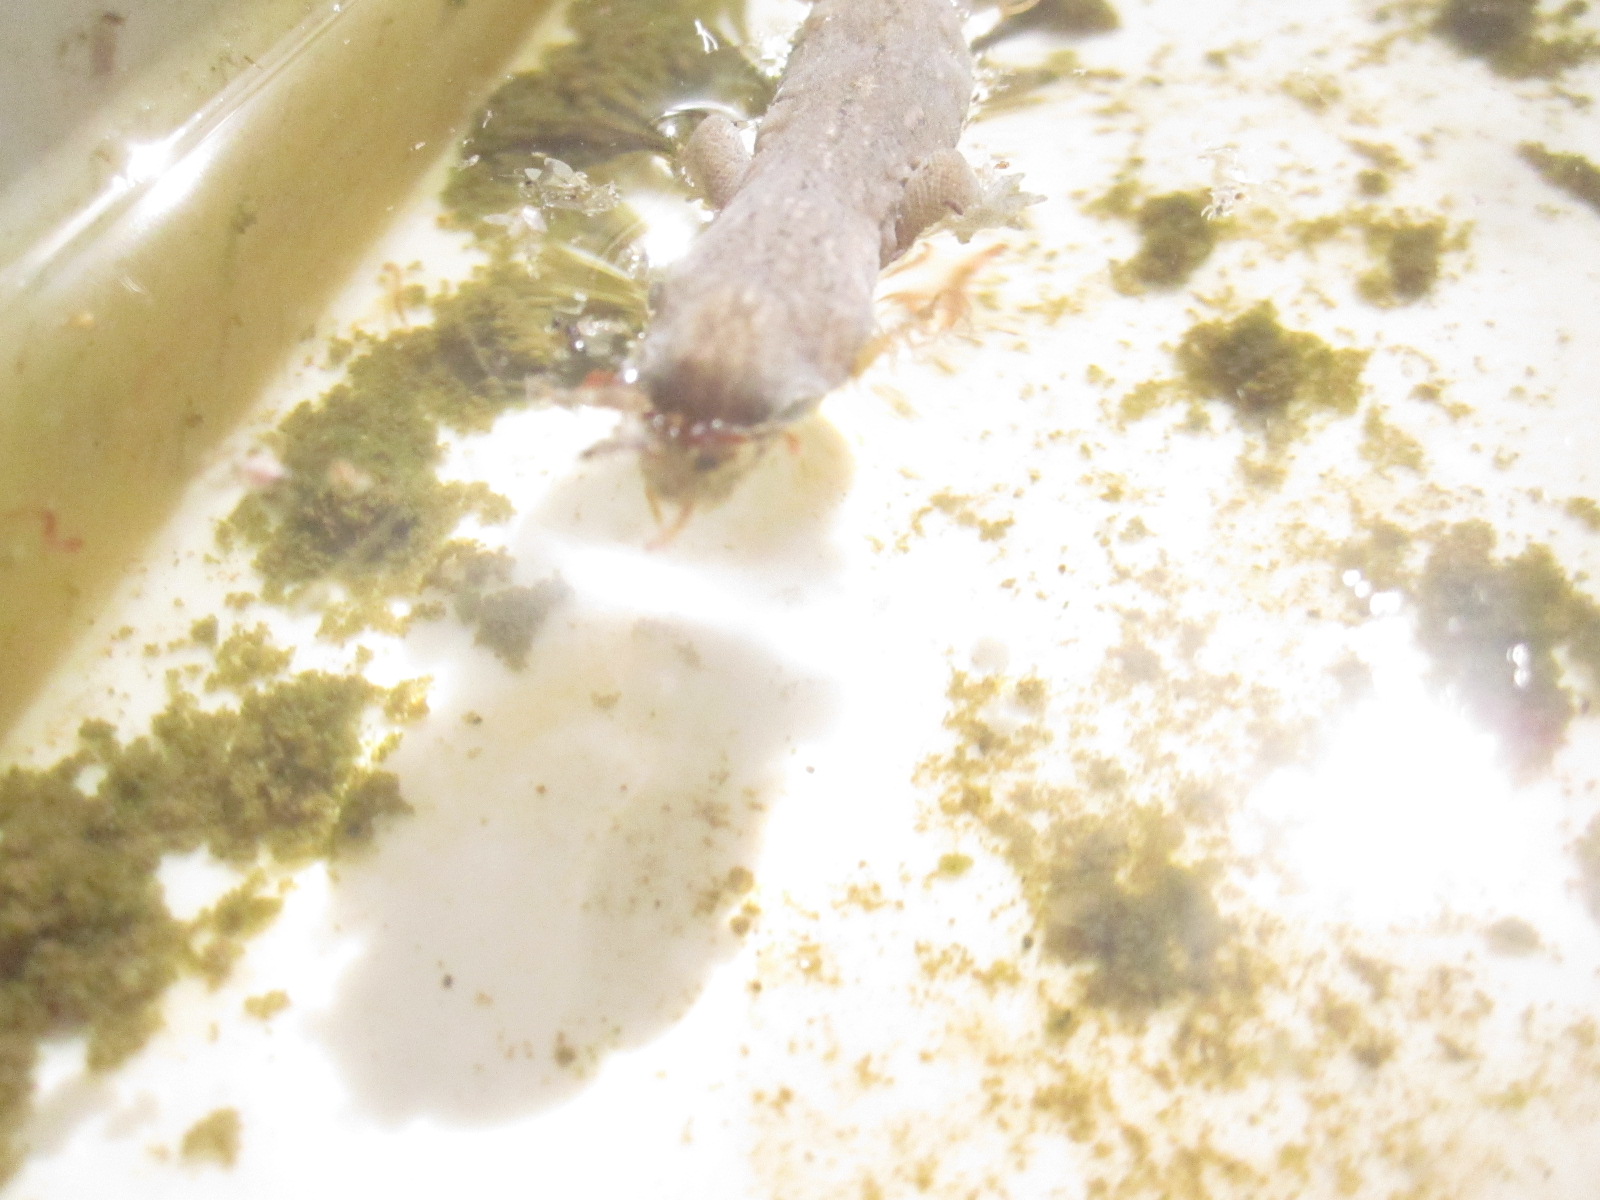 水面に浮かぶヤモリの死体に大量のボウフラが集まり食べている